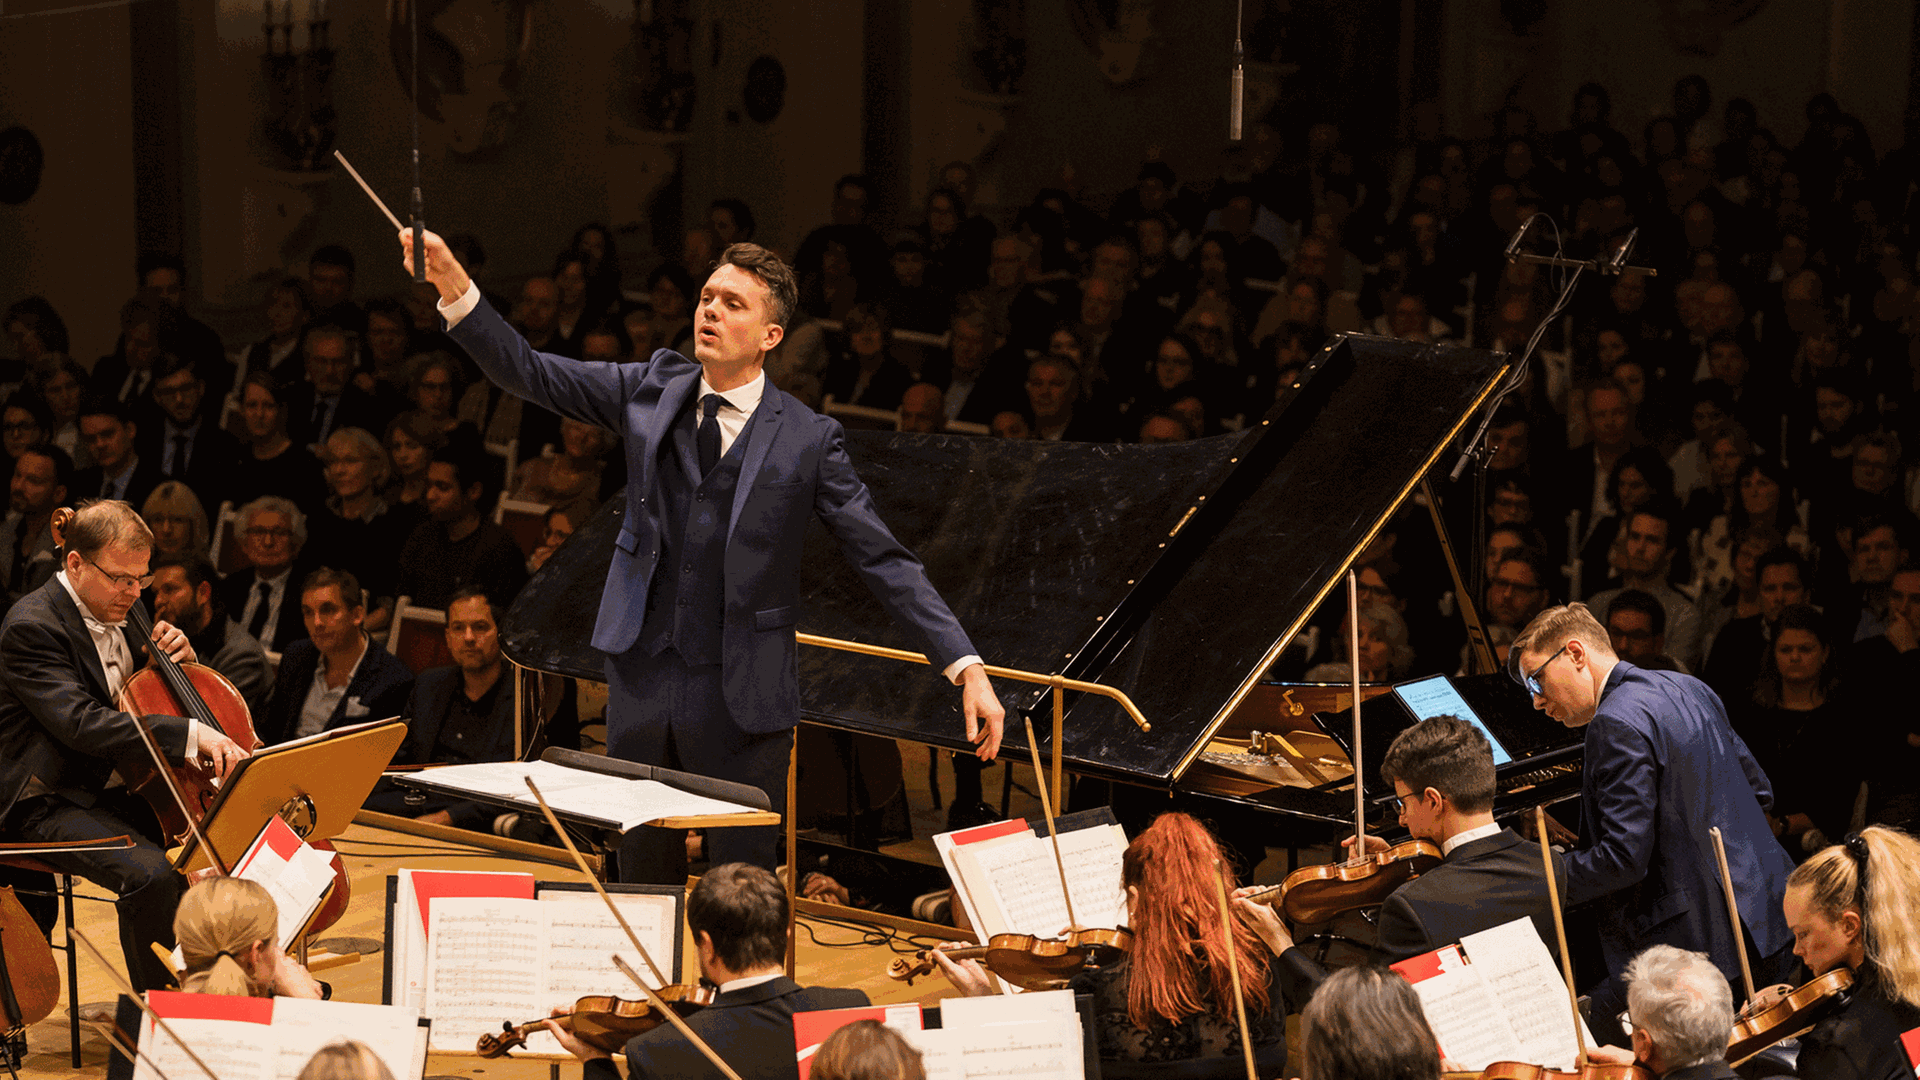 Das Island Symphonie Orchester mit dem Dirigenten Daniel Bjarnason und dem Pianisten Víkingur Ólafsson am 17.11.19 im Berliner Konzerthaus